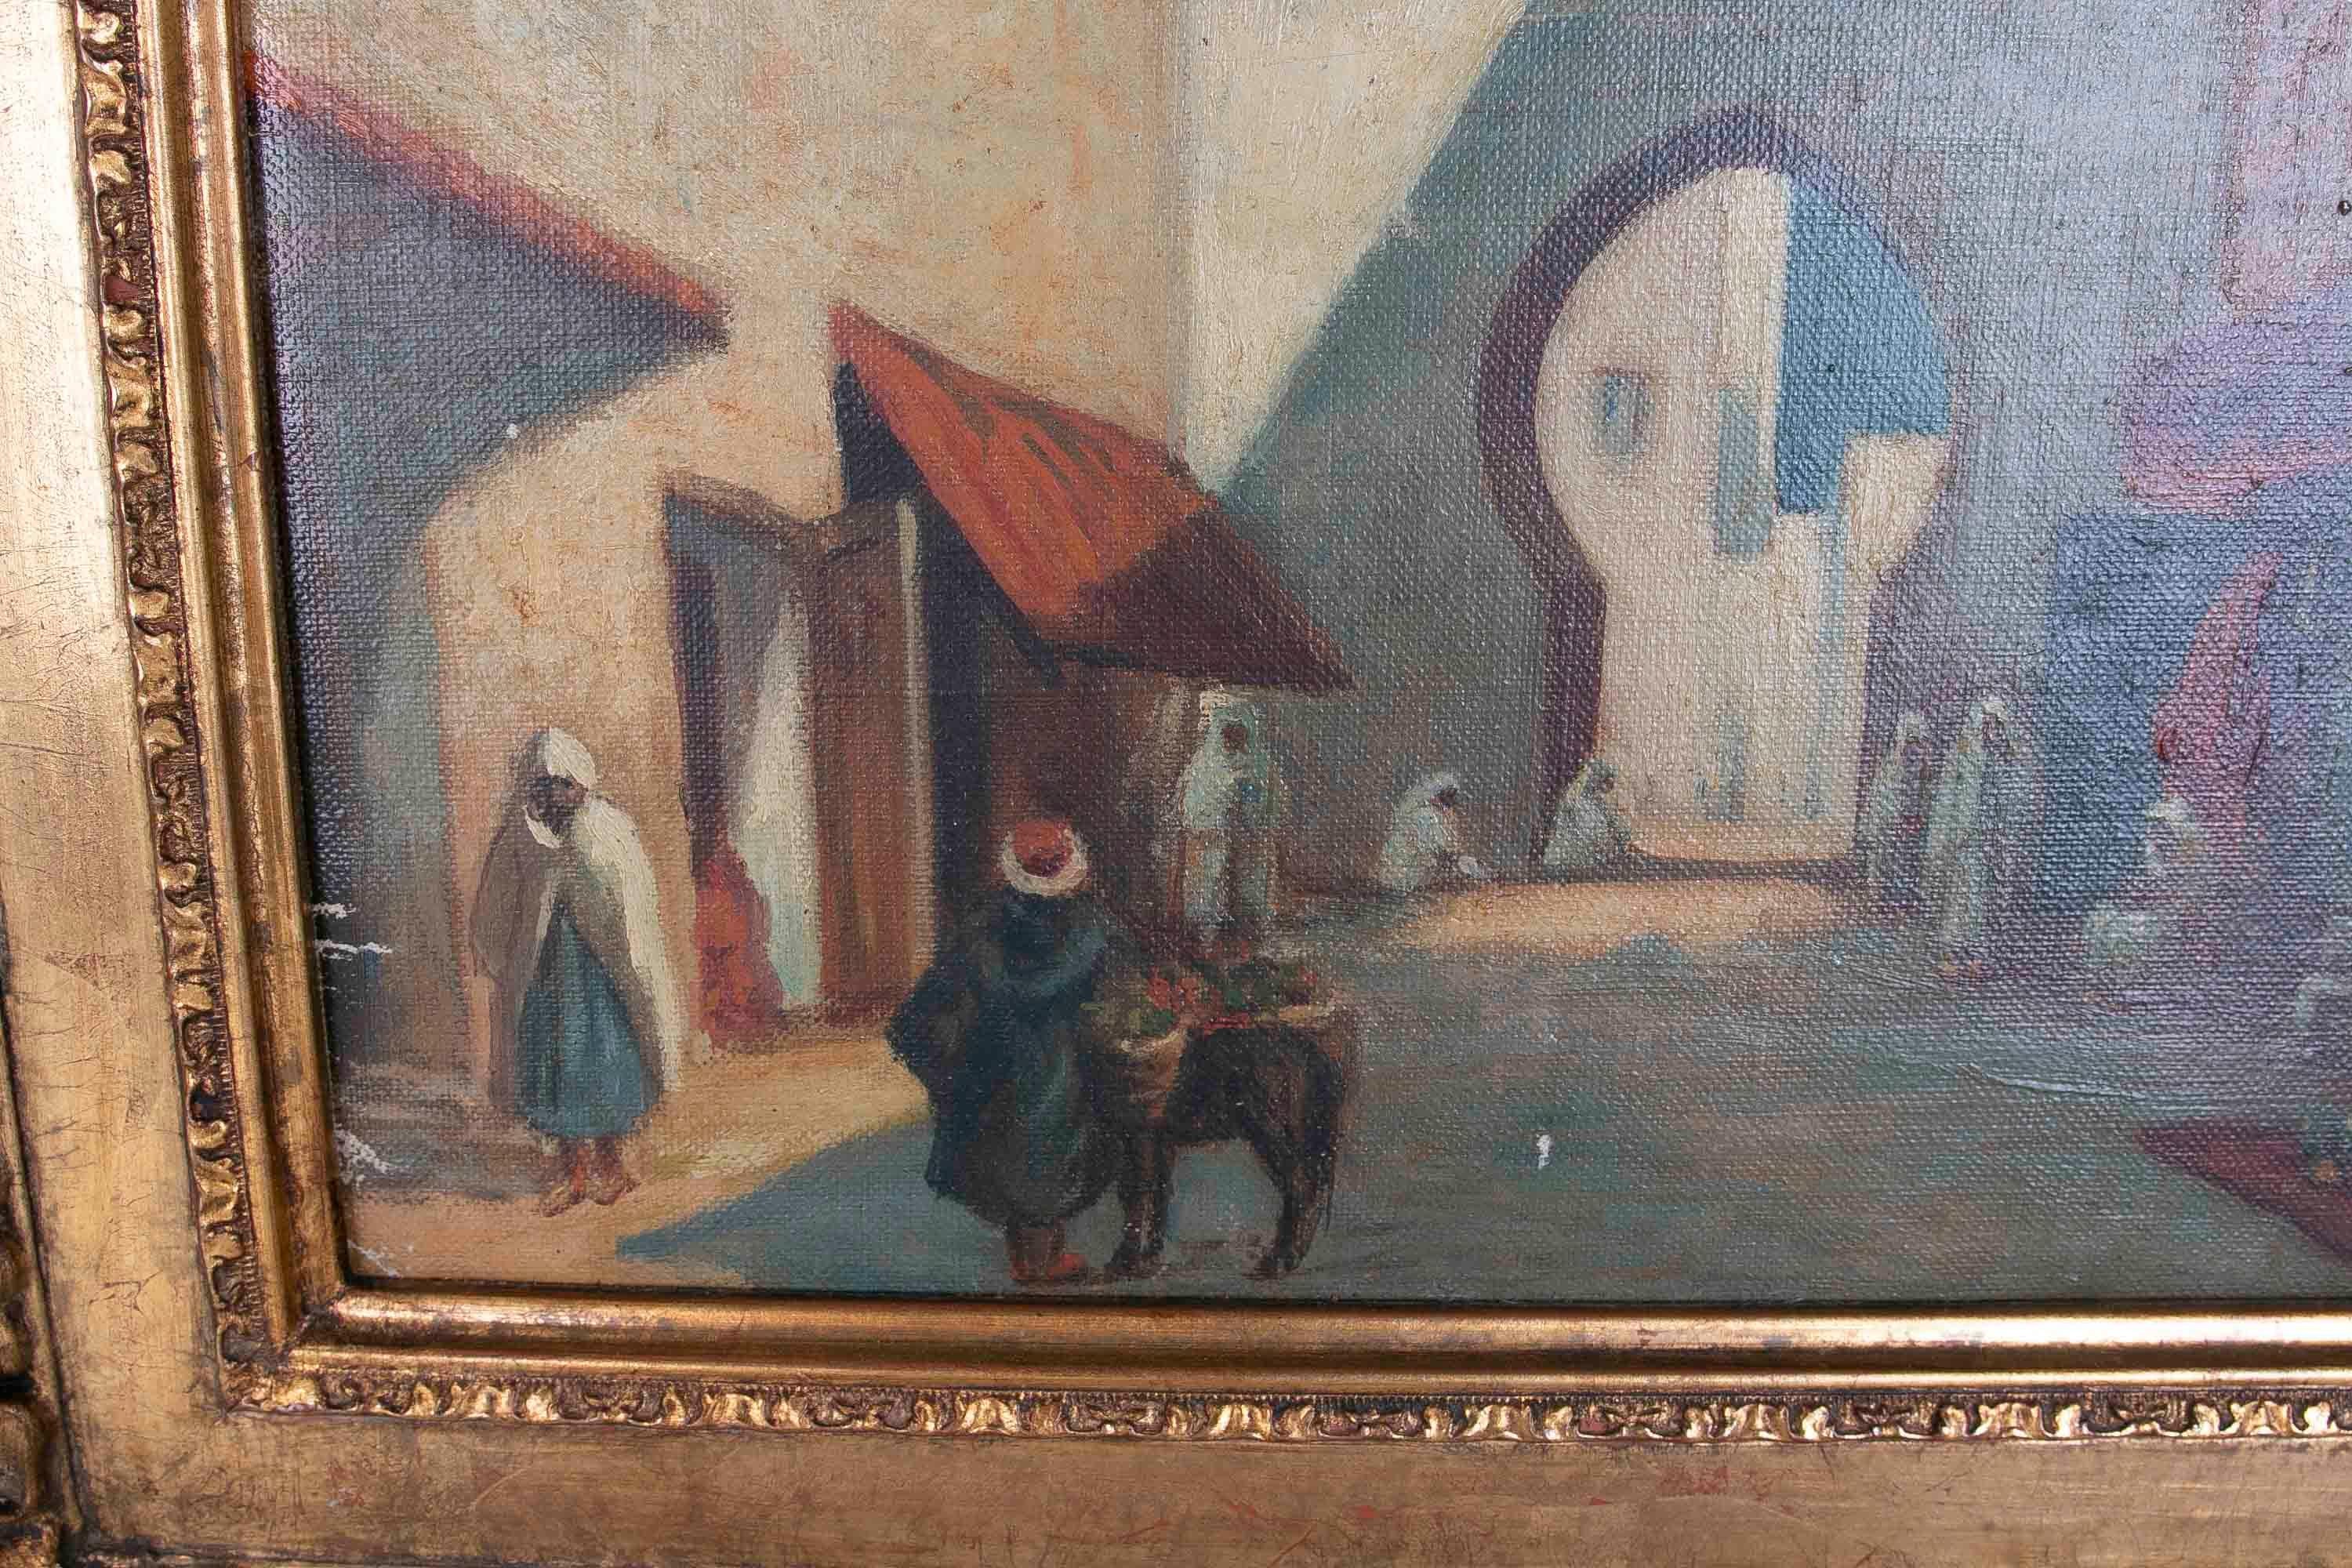 Orientalisches gerahmtes Gemälde einer arabischen Stadt, datiert 1884

Maße mit Rahmen: 35.5x43x4cm
